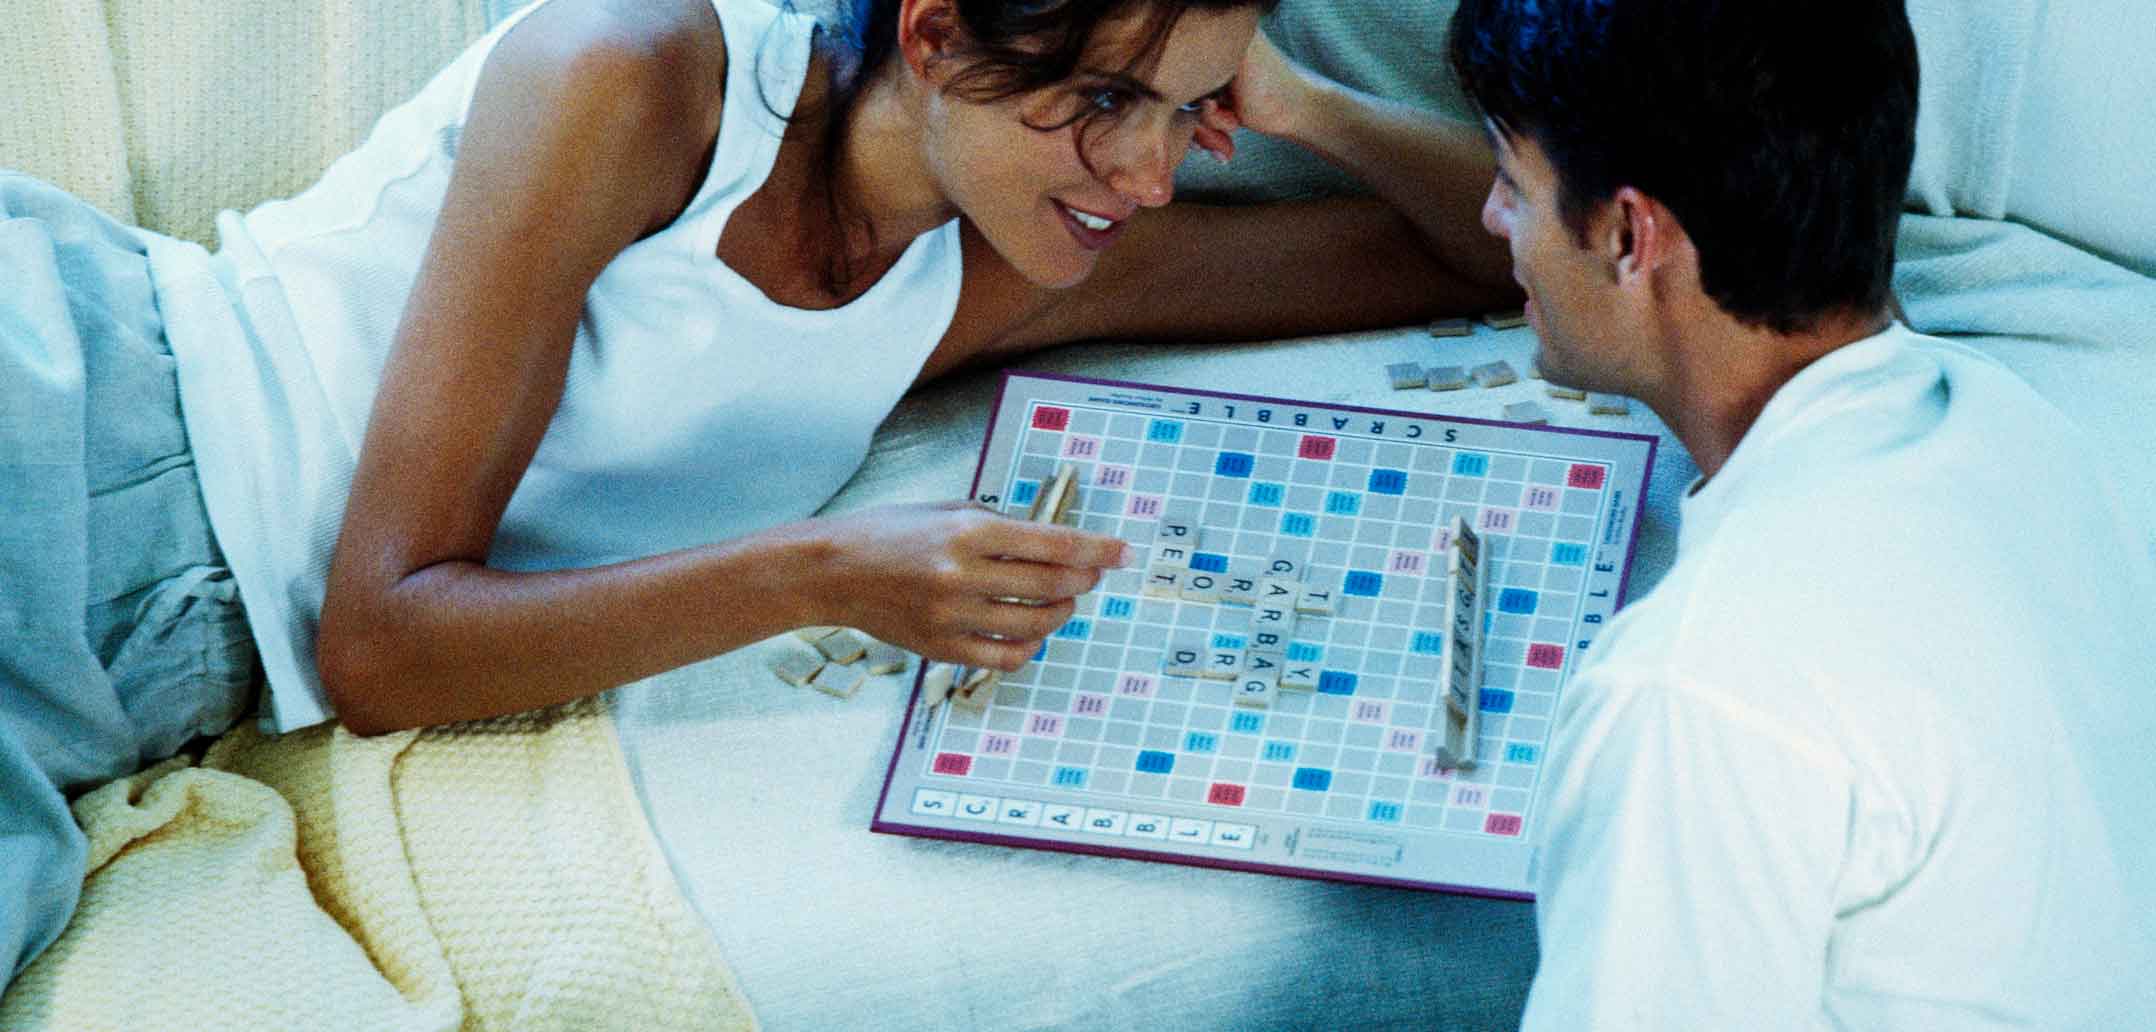 Spiele spielen fördert die Kommunikation in der Beziehung